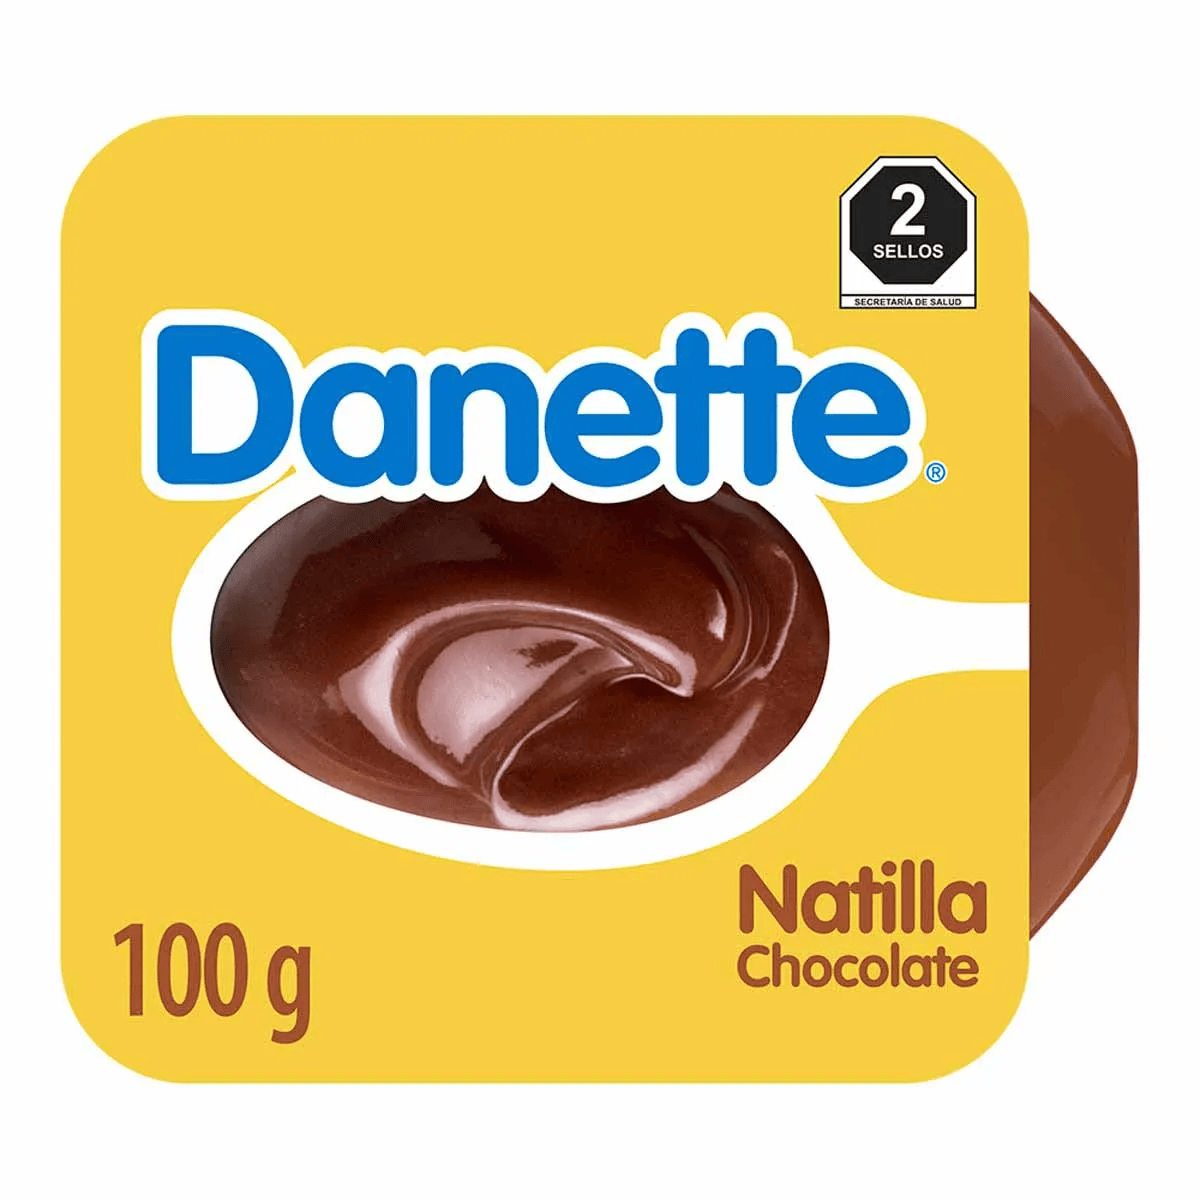 DANETTE NATILLA CHOCOLATE 100GRS